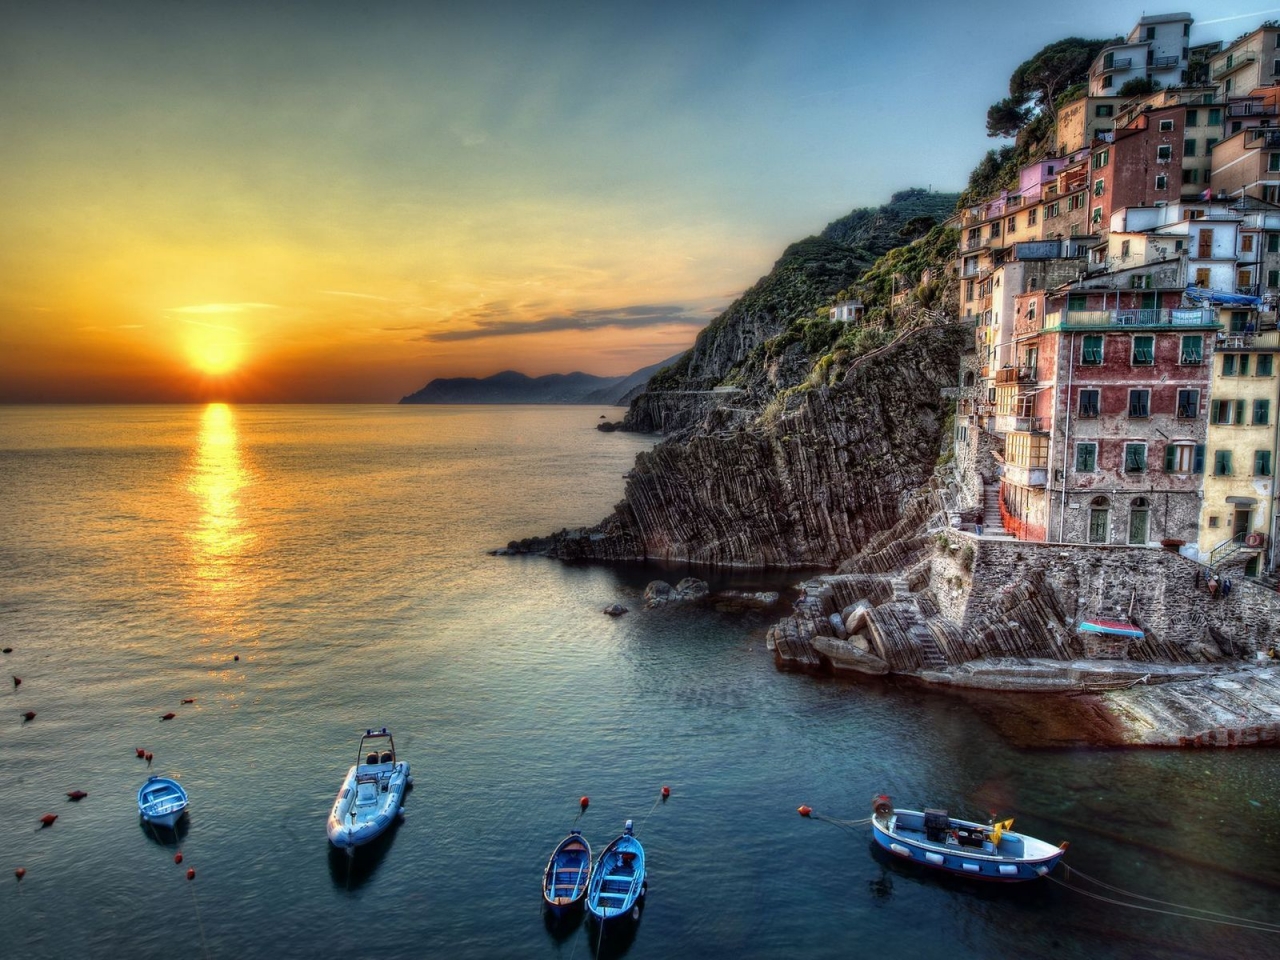 Riomaggiore Italy for 1280 x 960 resolution